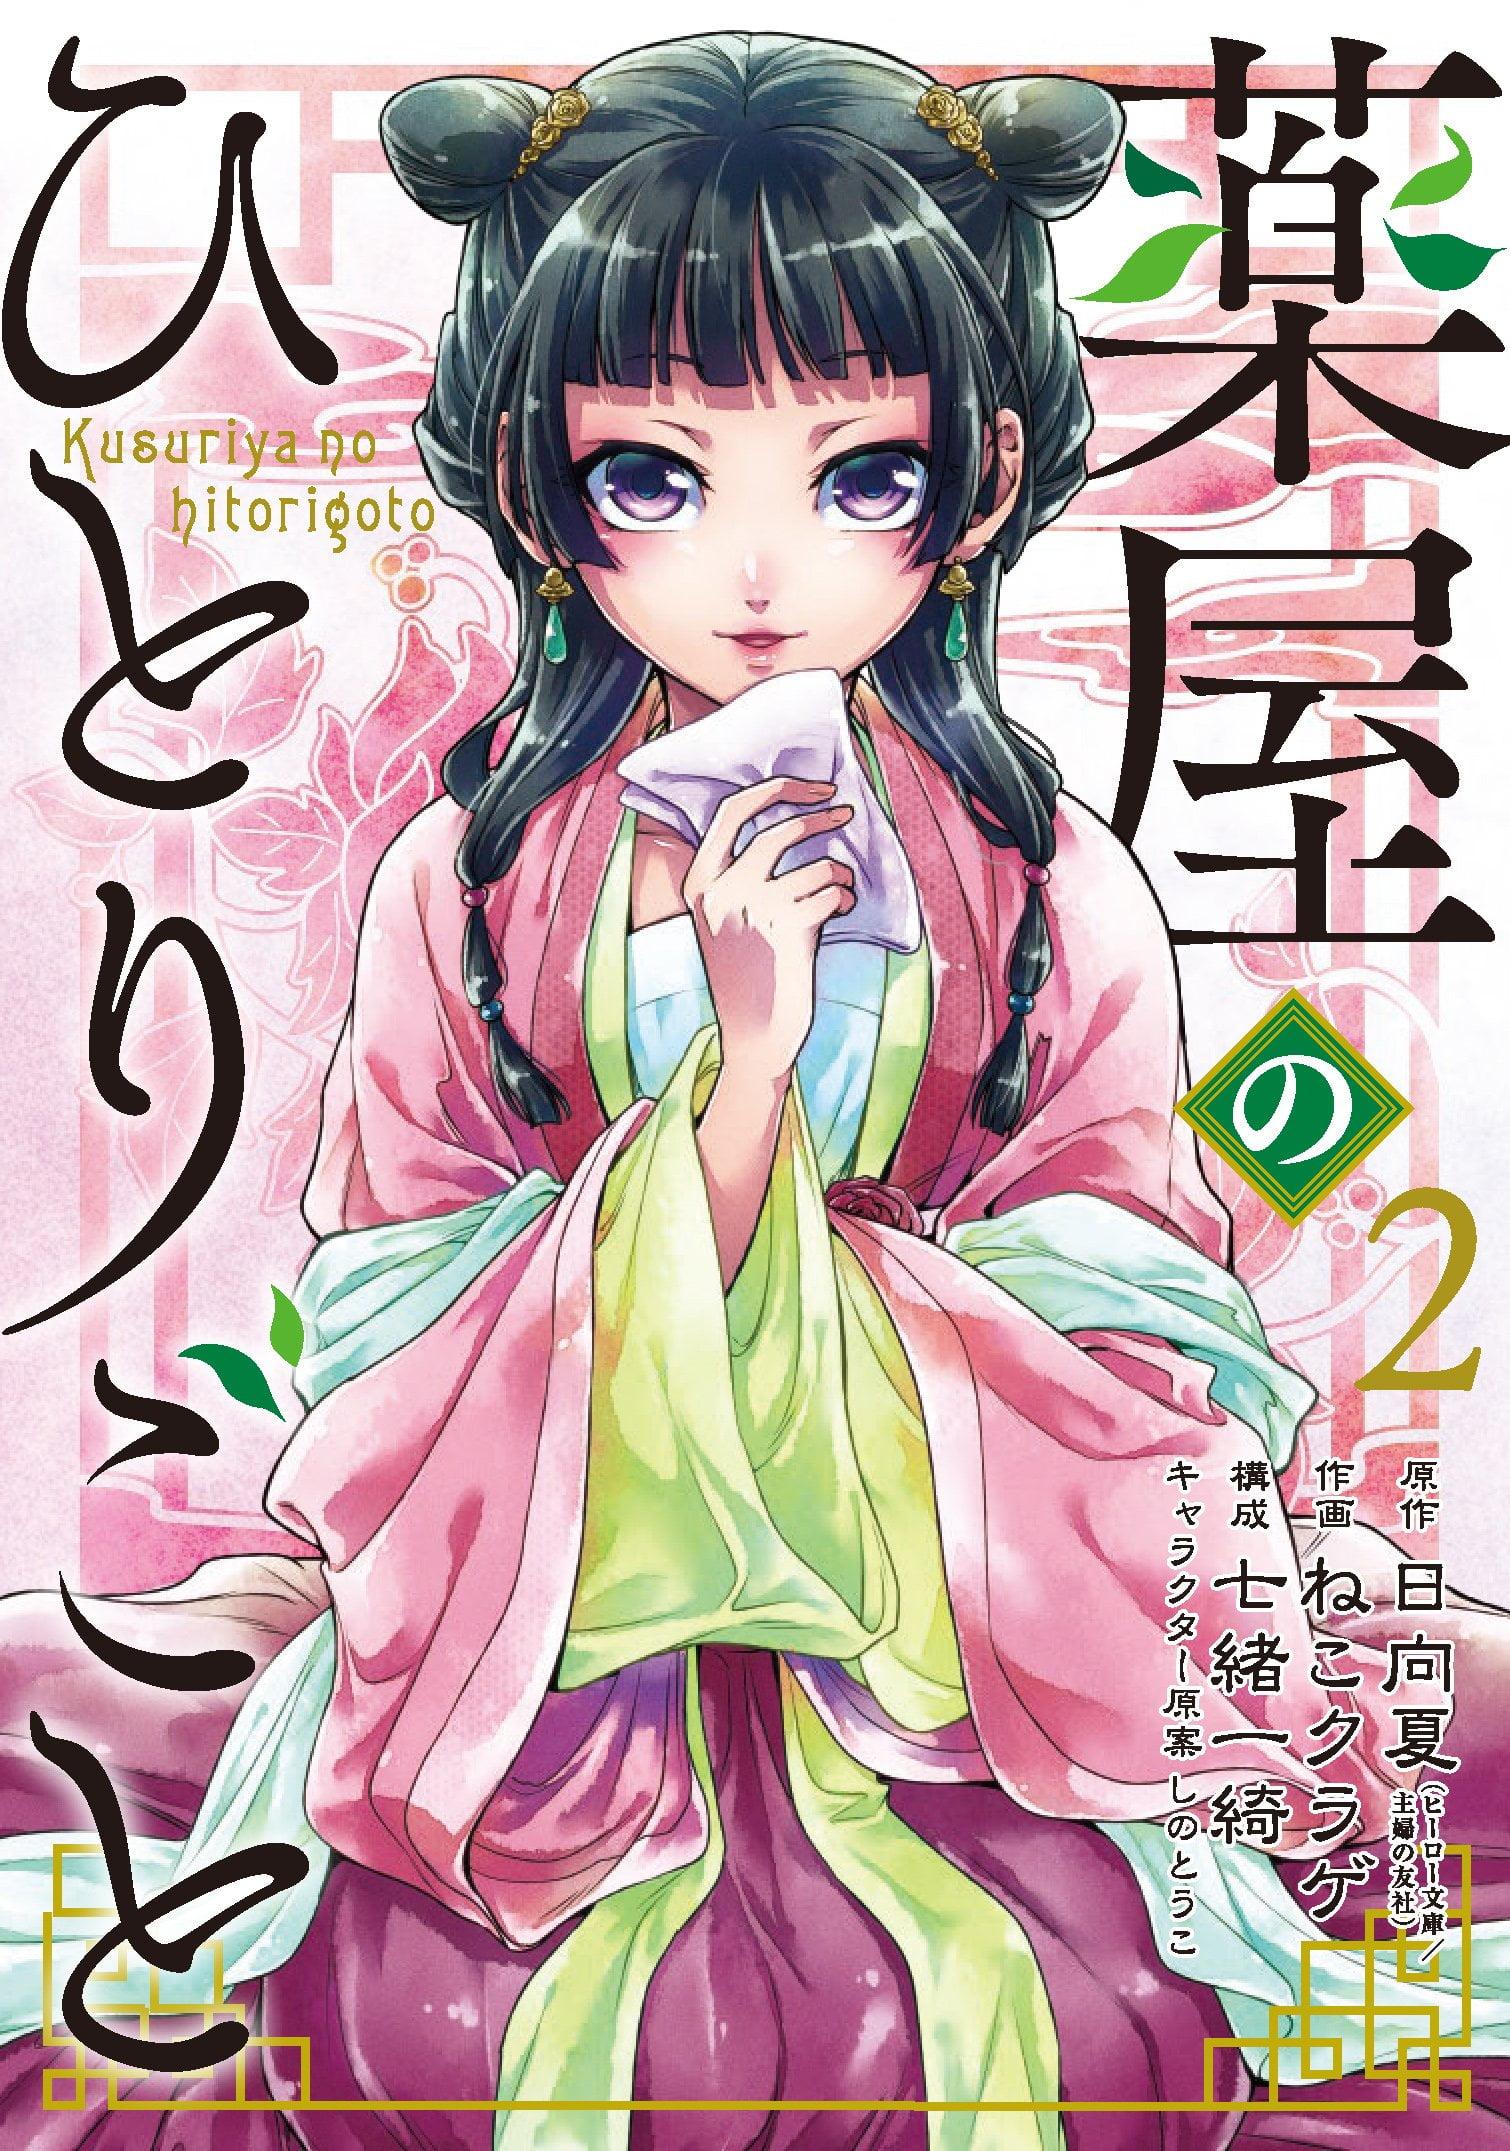 Kusuriya No Hitorigoto 2 (Japanese Edition)